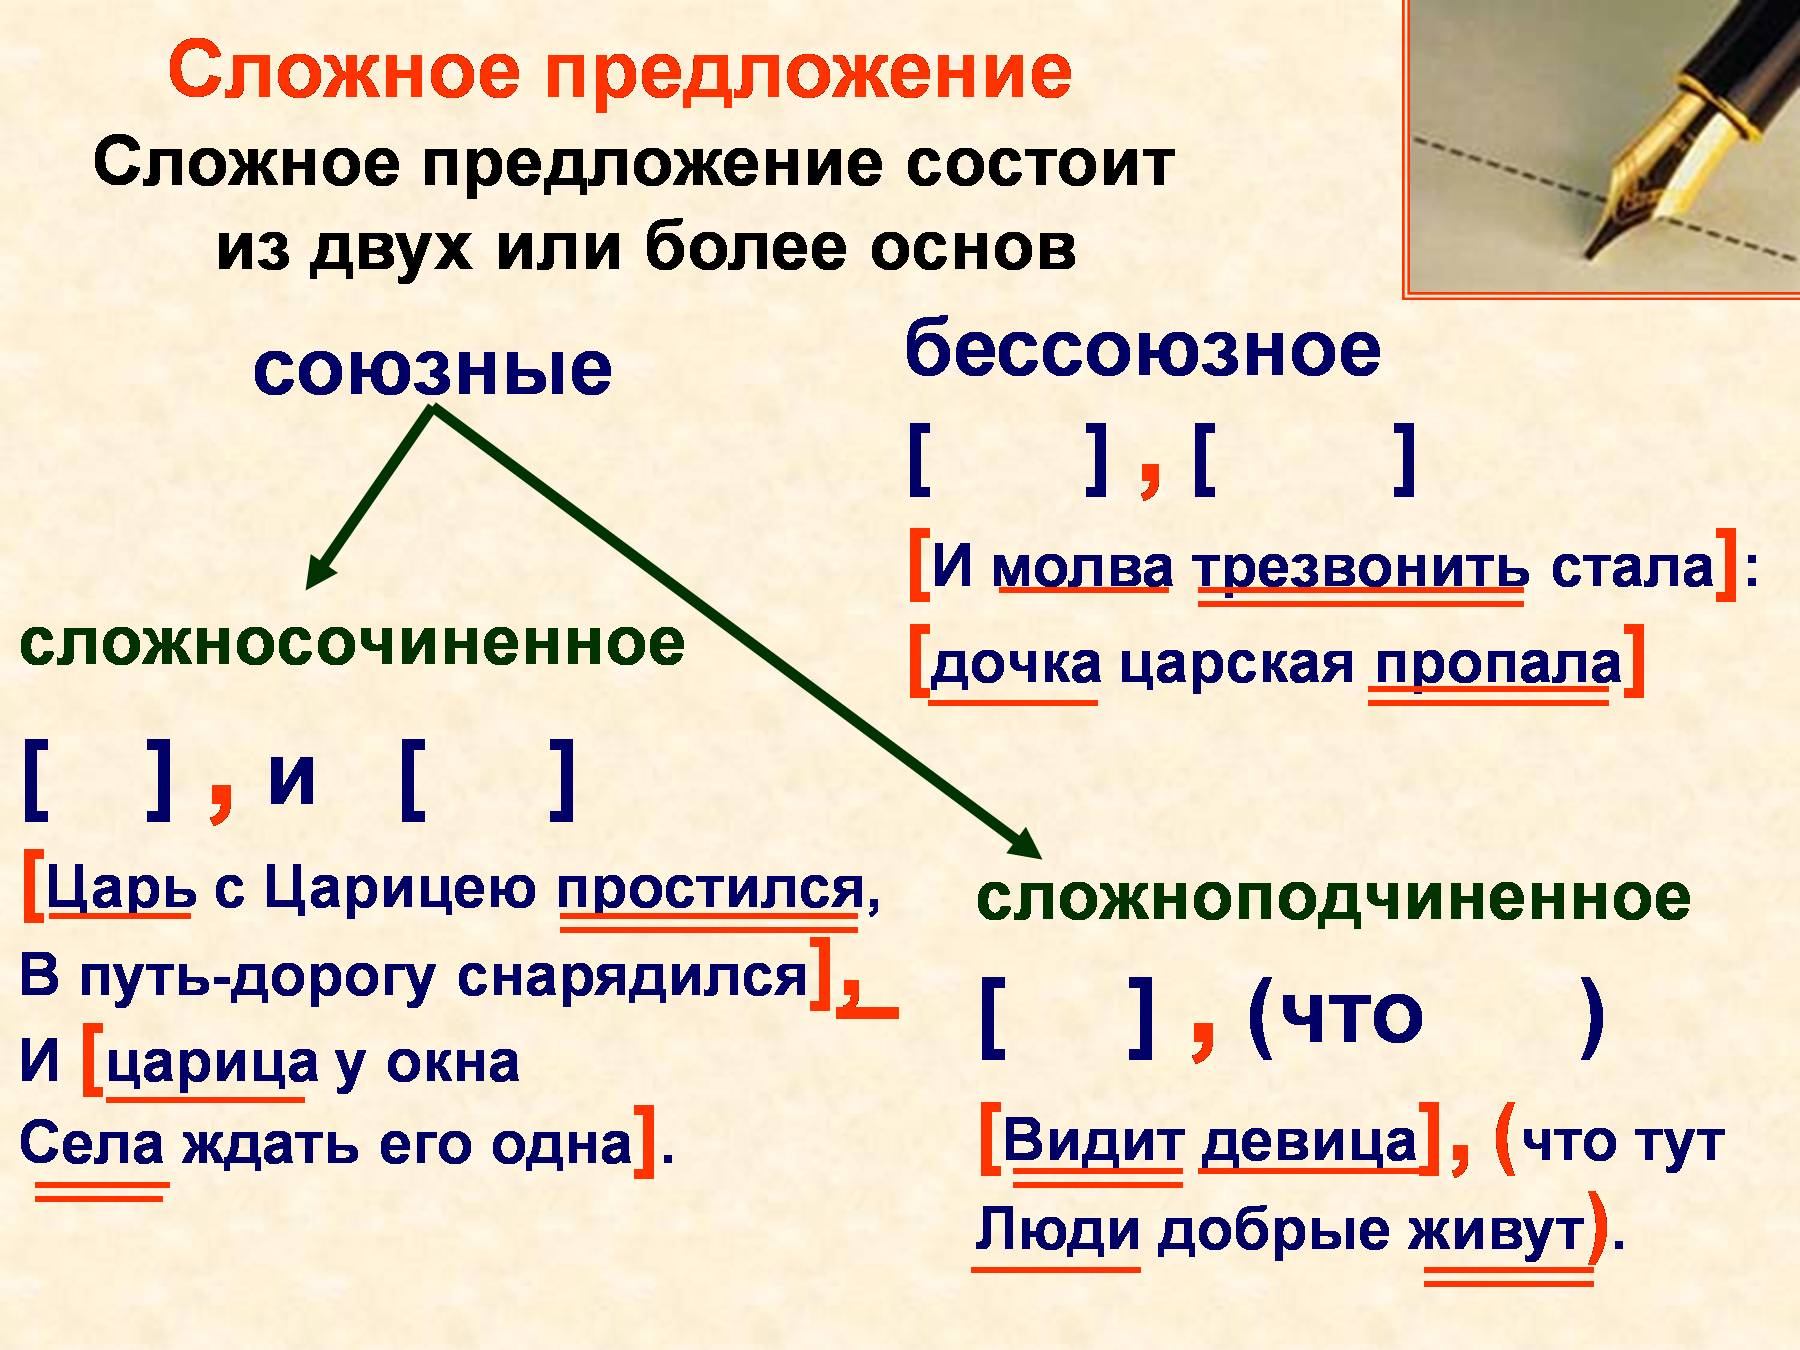 Сложное предложение полностью. Что такое сложное предложение 4 класс правило в русском языке. Из чего состоит сложное предложение в русском языке. Синтаксис сложного предложения. Слоржныеп предложения.